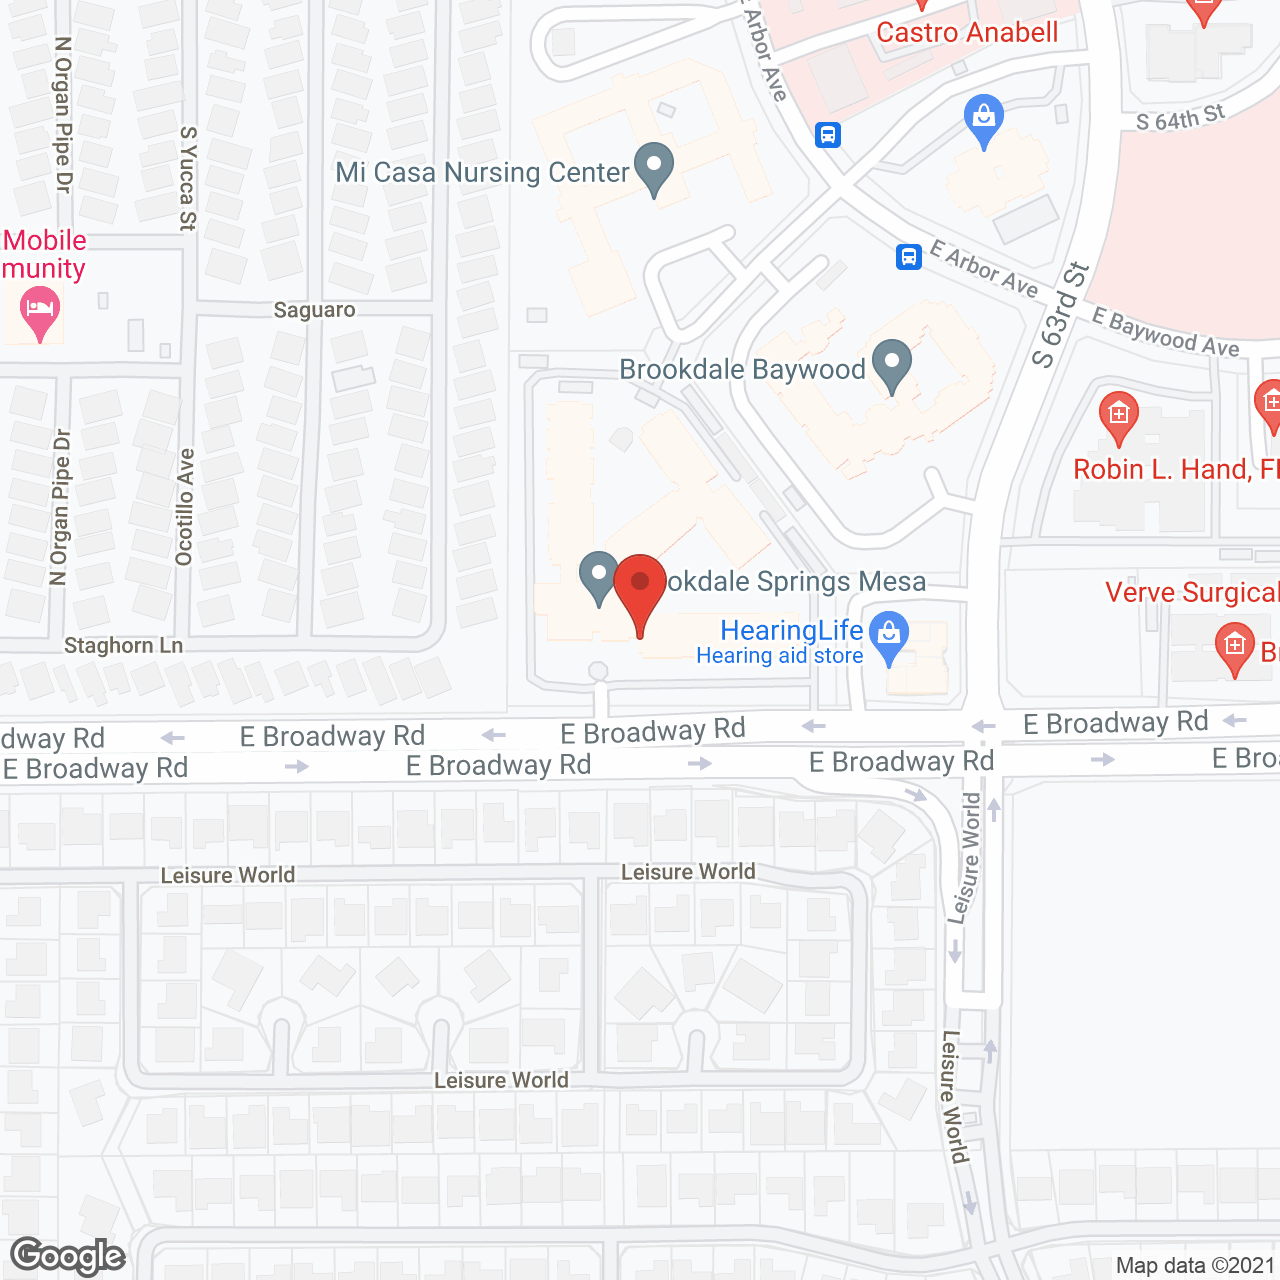 Brookdale Springs Mesa in google map